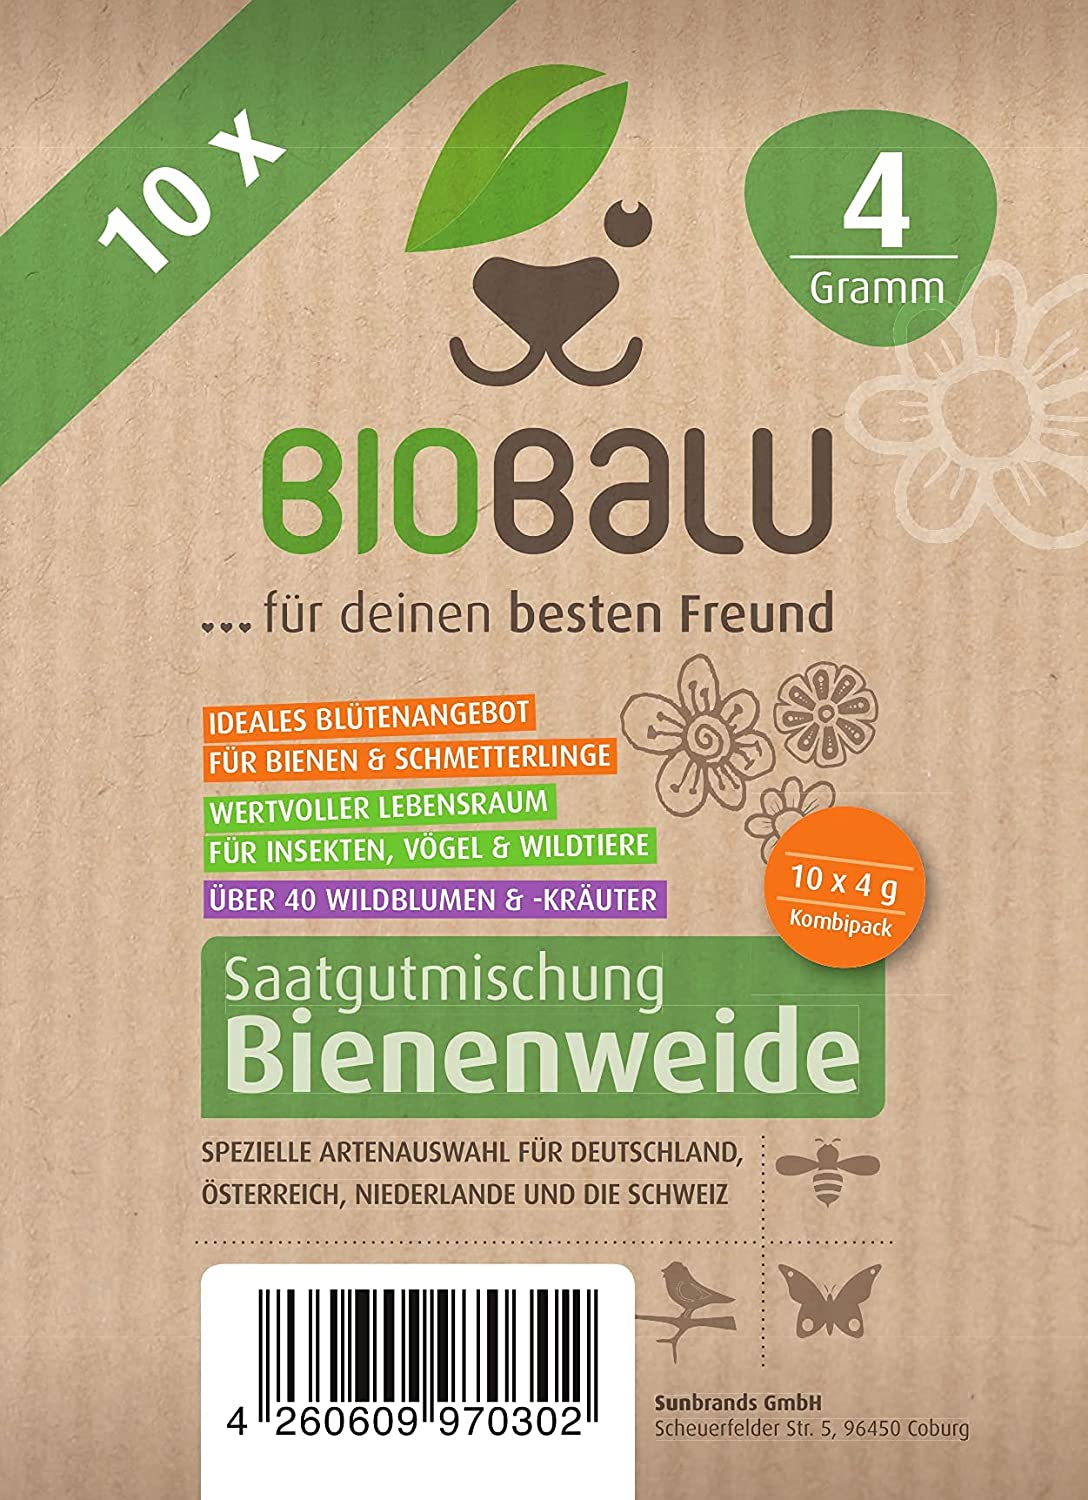 Biobalu Bienenweide Promo 4g